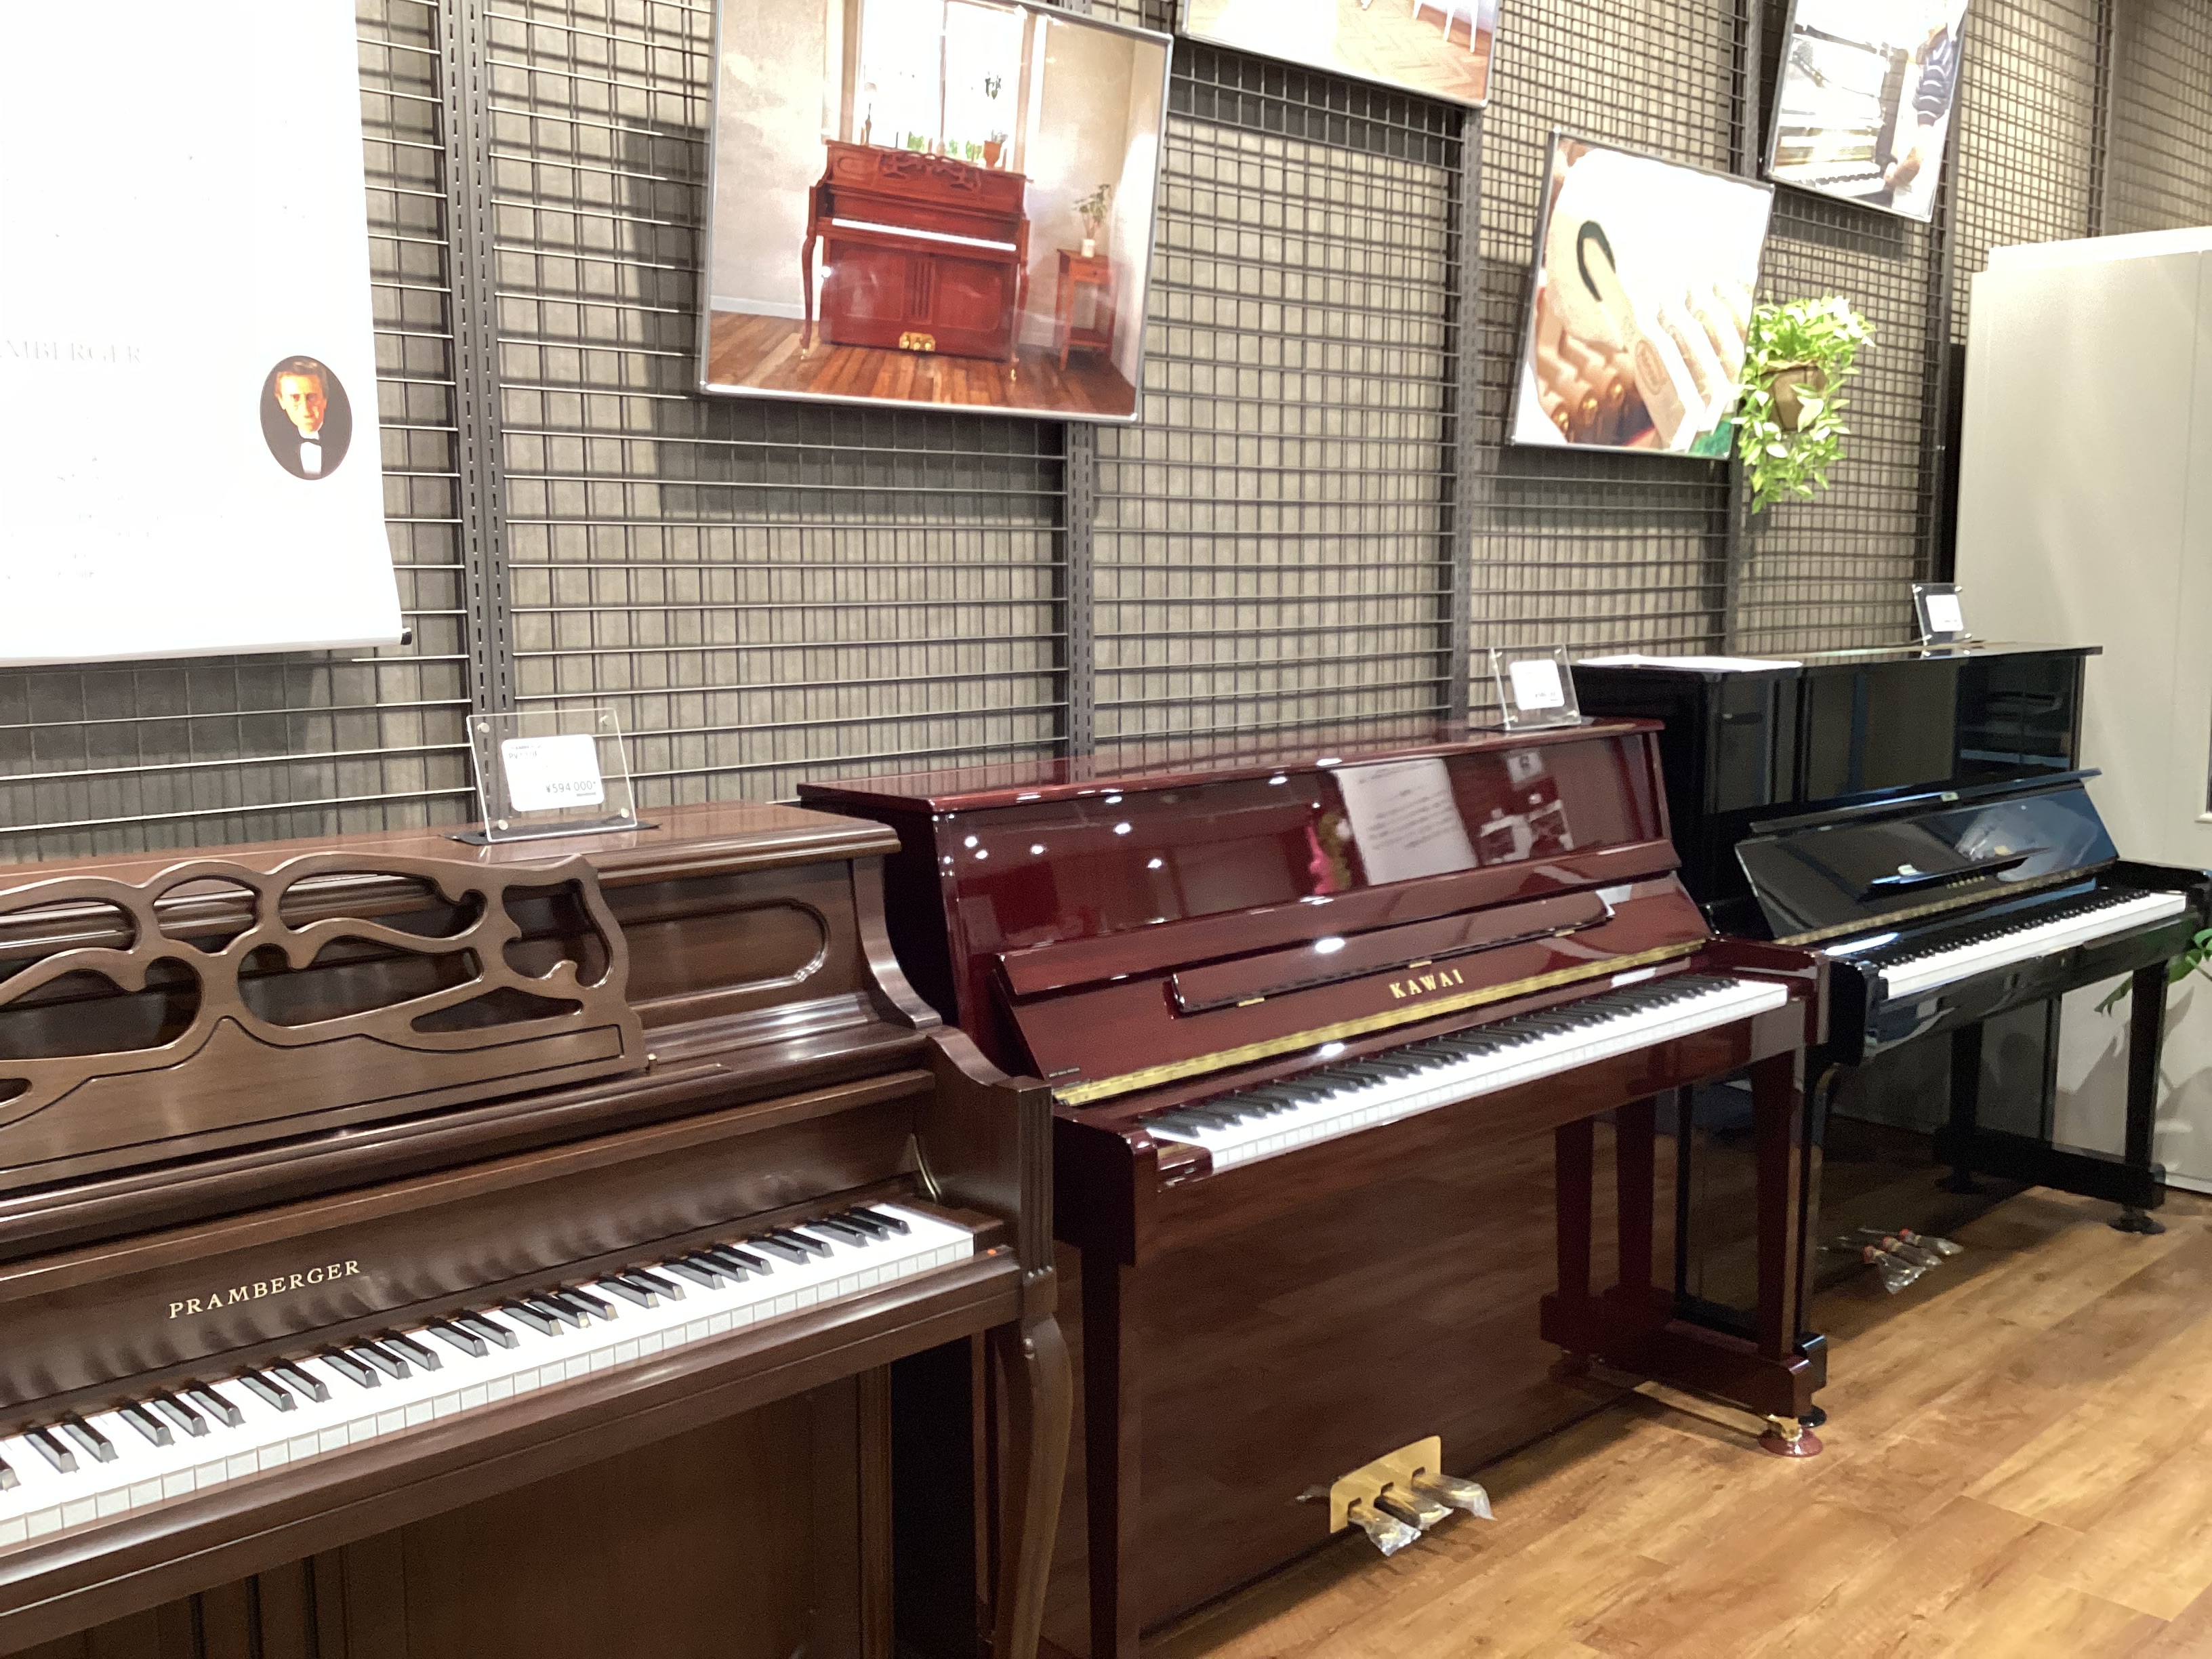 島村楽器イオンタウンユーカリが丘店では、新品アップライトピアノ・中古アップライトピアノの展示がございます。電子ピアノとの違いも比較はもちろん、展示機種は全て試弾して頂けますので、お気軽にご相談下さい。 CONTENTSアコースティックピアノ配送料金￥10,000込サポートキャンペーン実施中！ピアノア […]